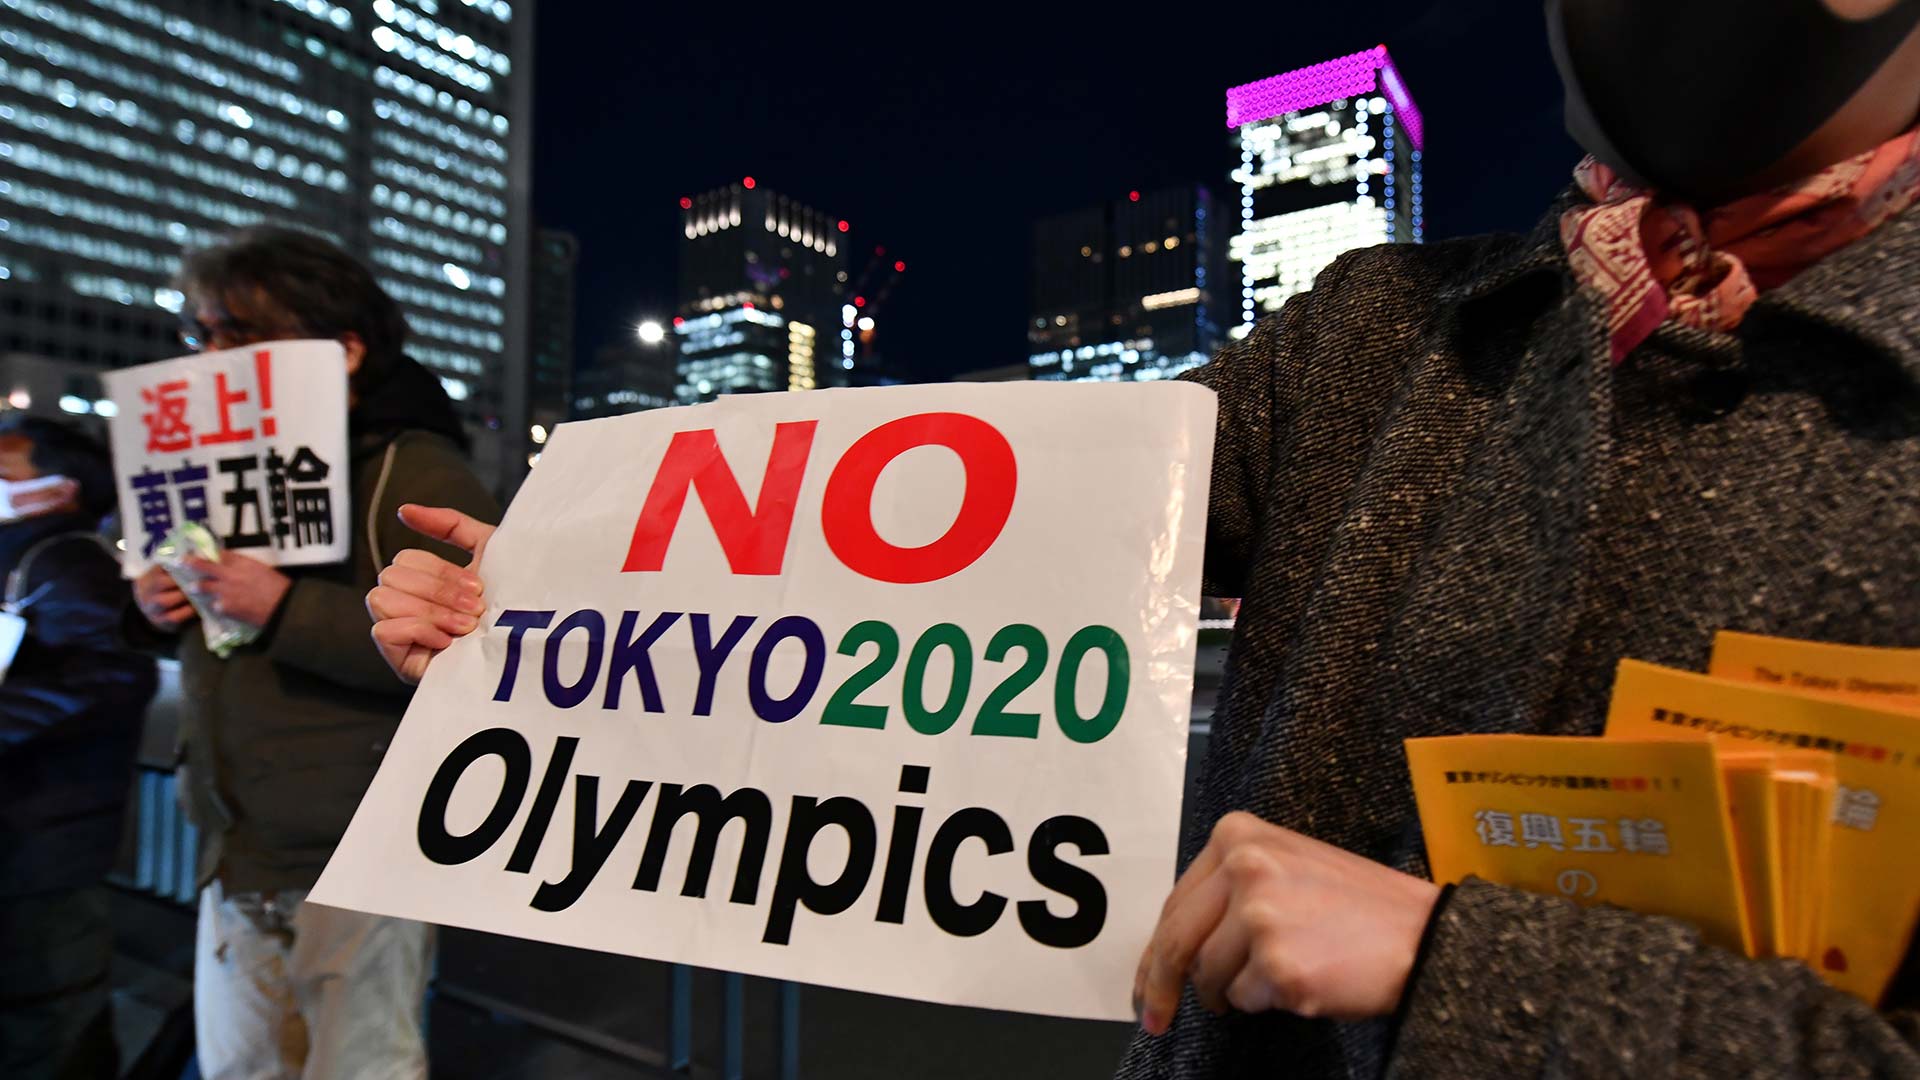 Japón pospone hasta 2021 los Juegos Olímpicos por el coronavirus